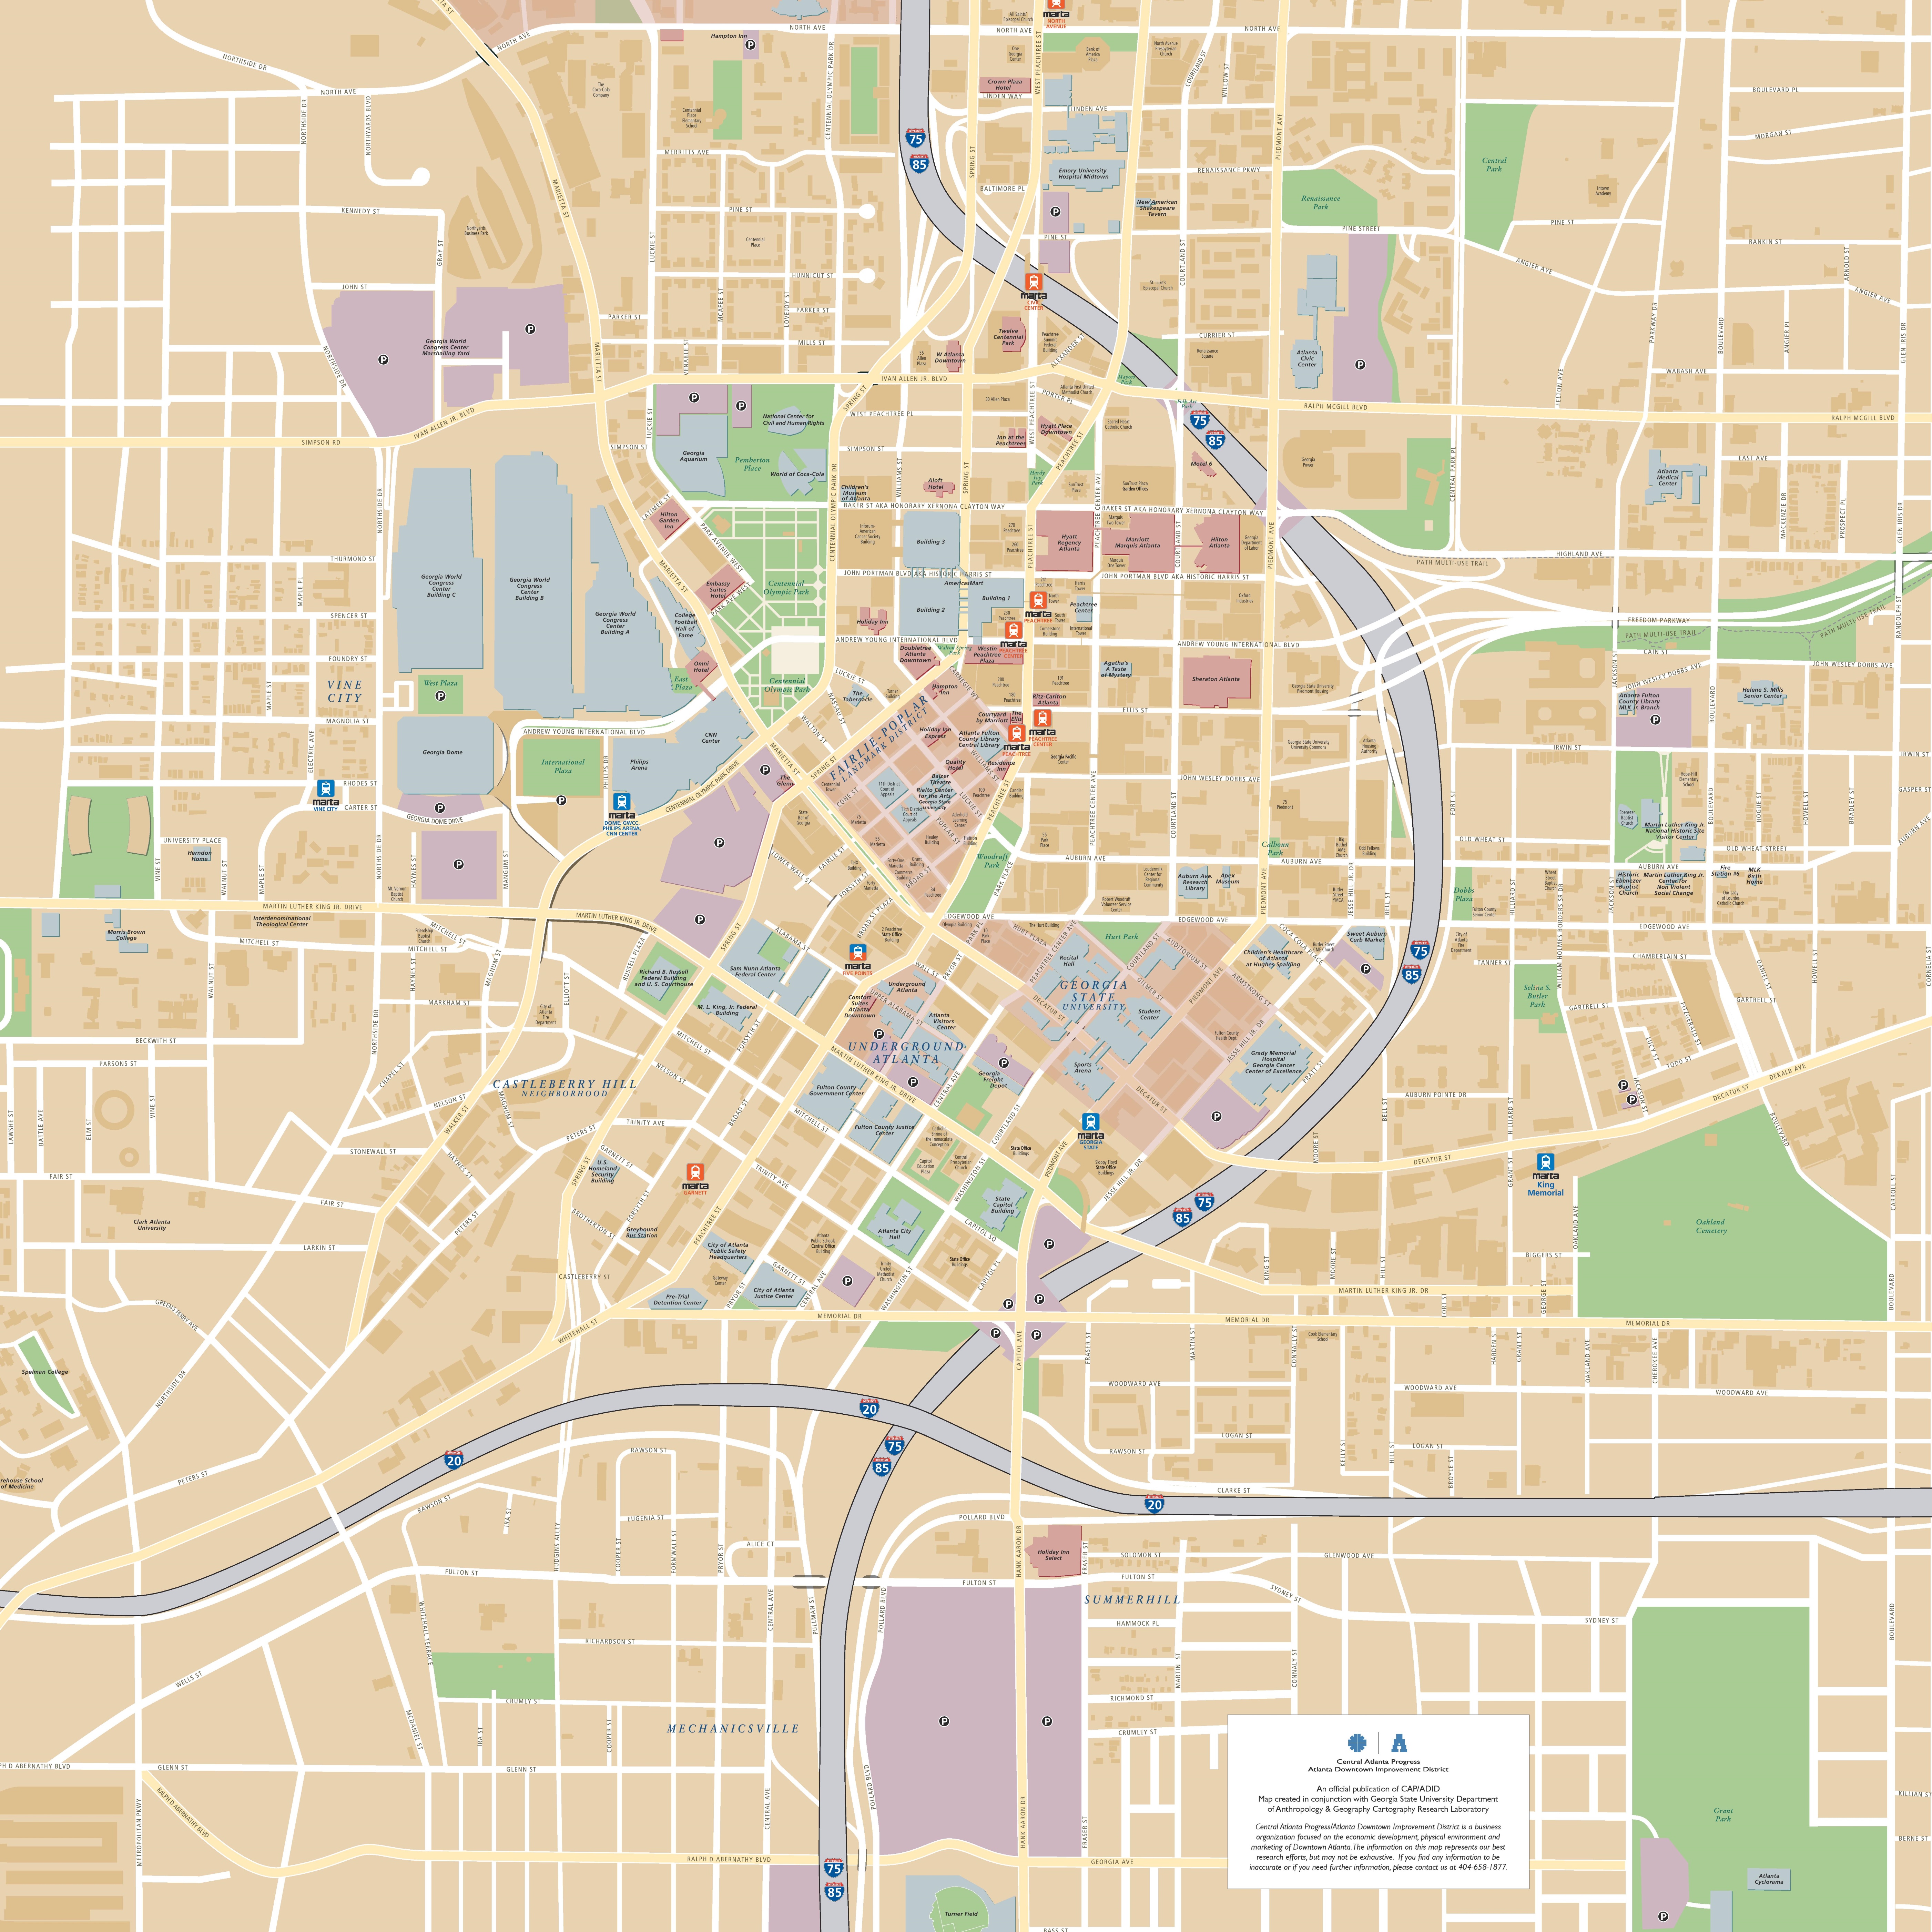 Map Of Hotels In Atlanta Ga 